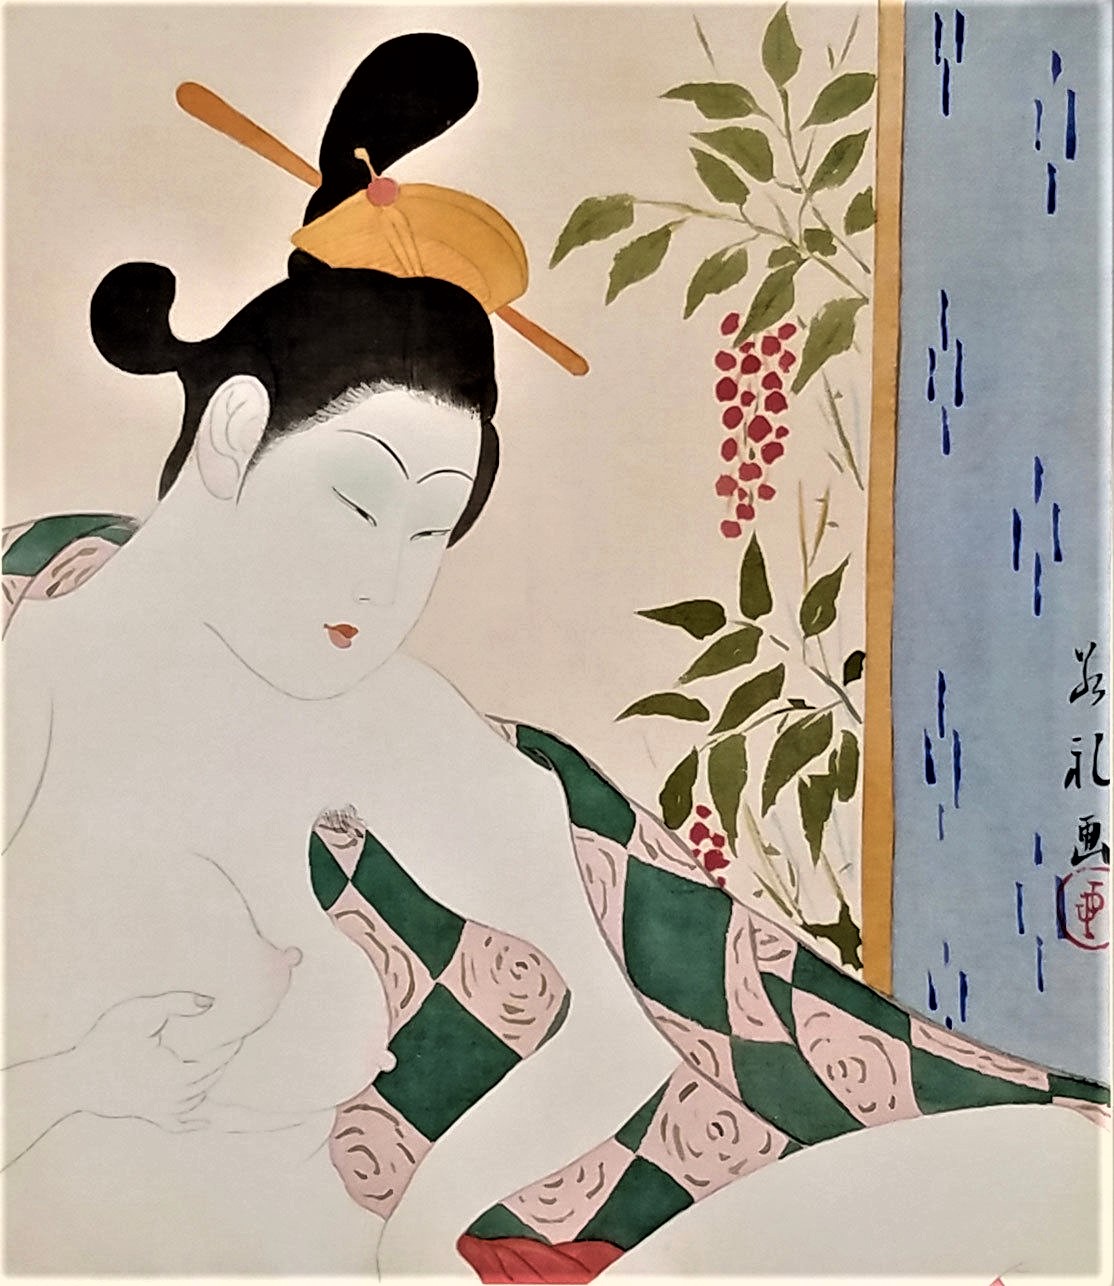 Au bas de cette aquarelle on lit : « Femme s’amusant toute seule, le 28 octobre 1928, Paul Jacoulet, Tokio ».